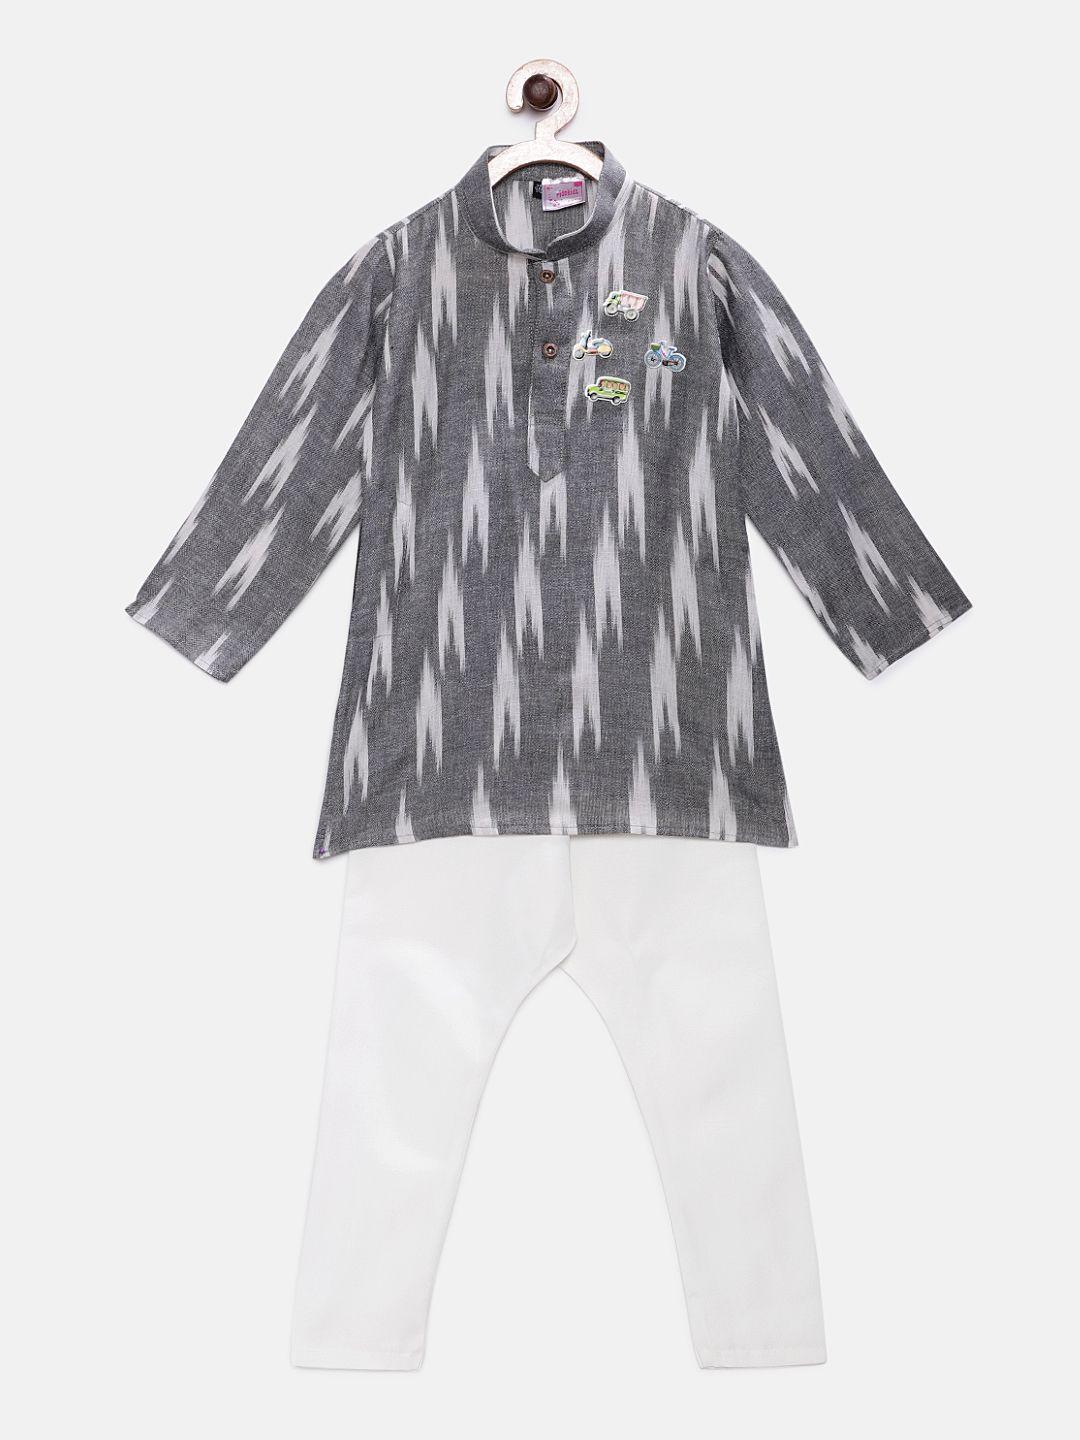 ridokidz boys grey & white printed kurta with pyjamas